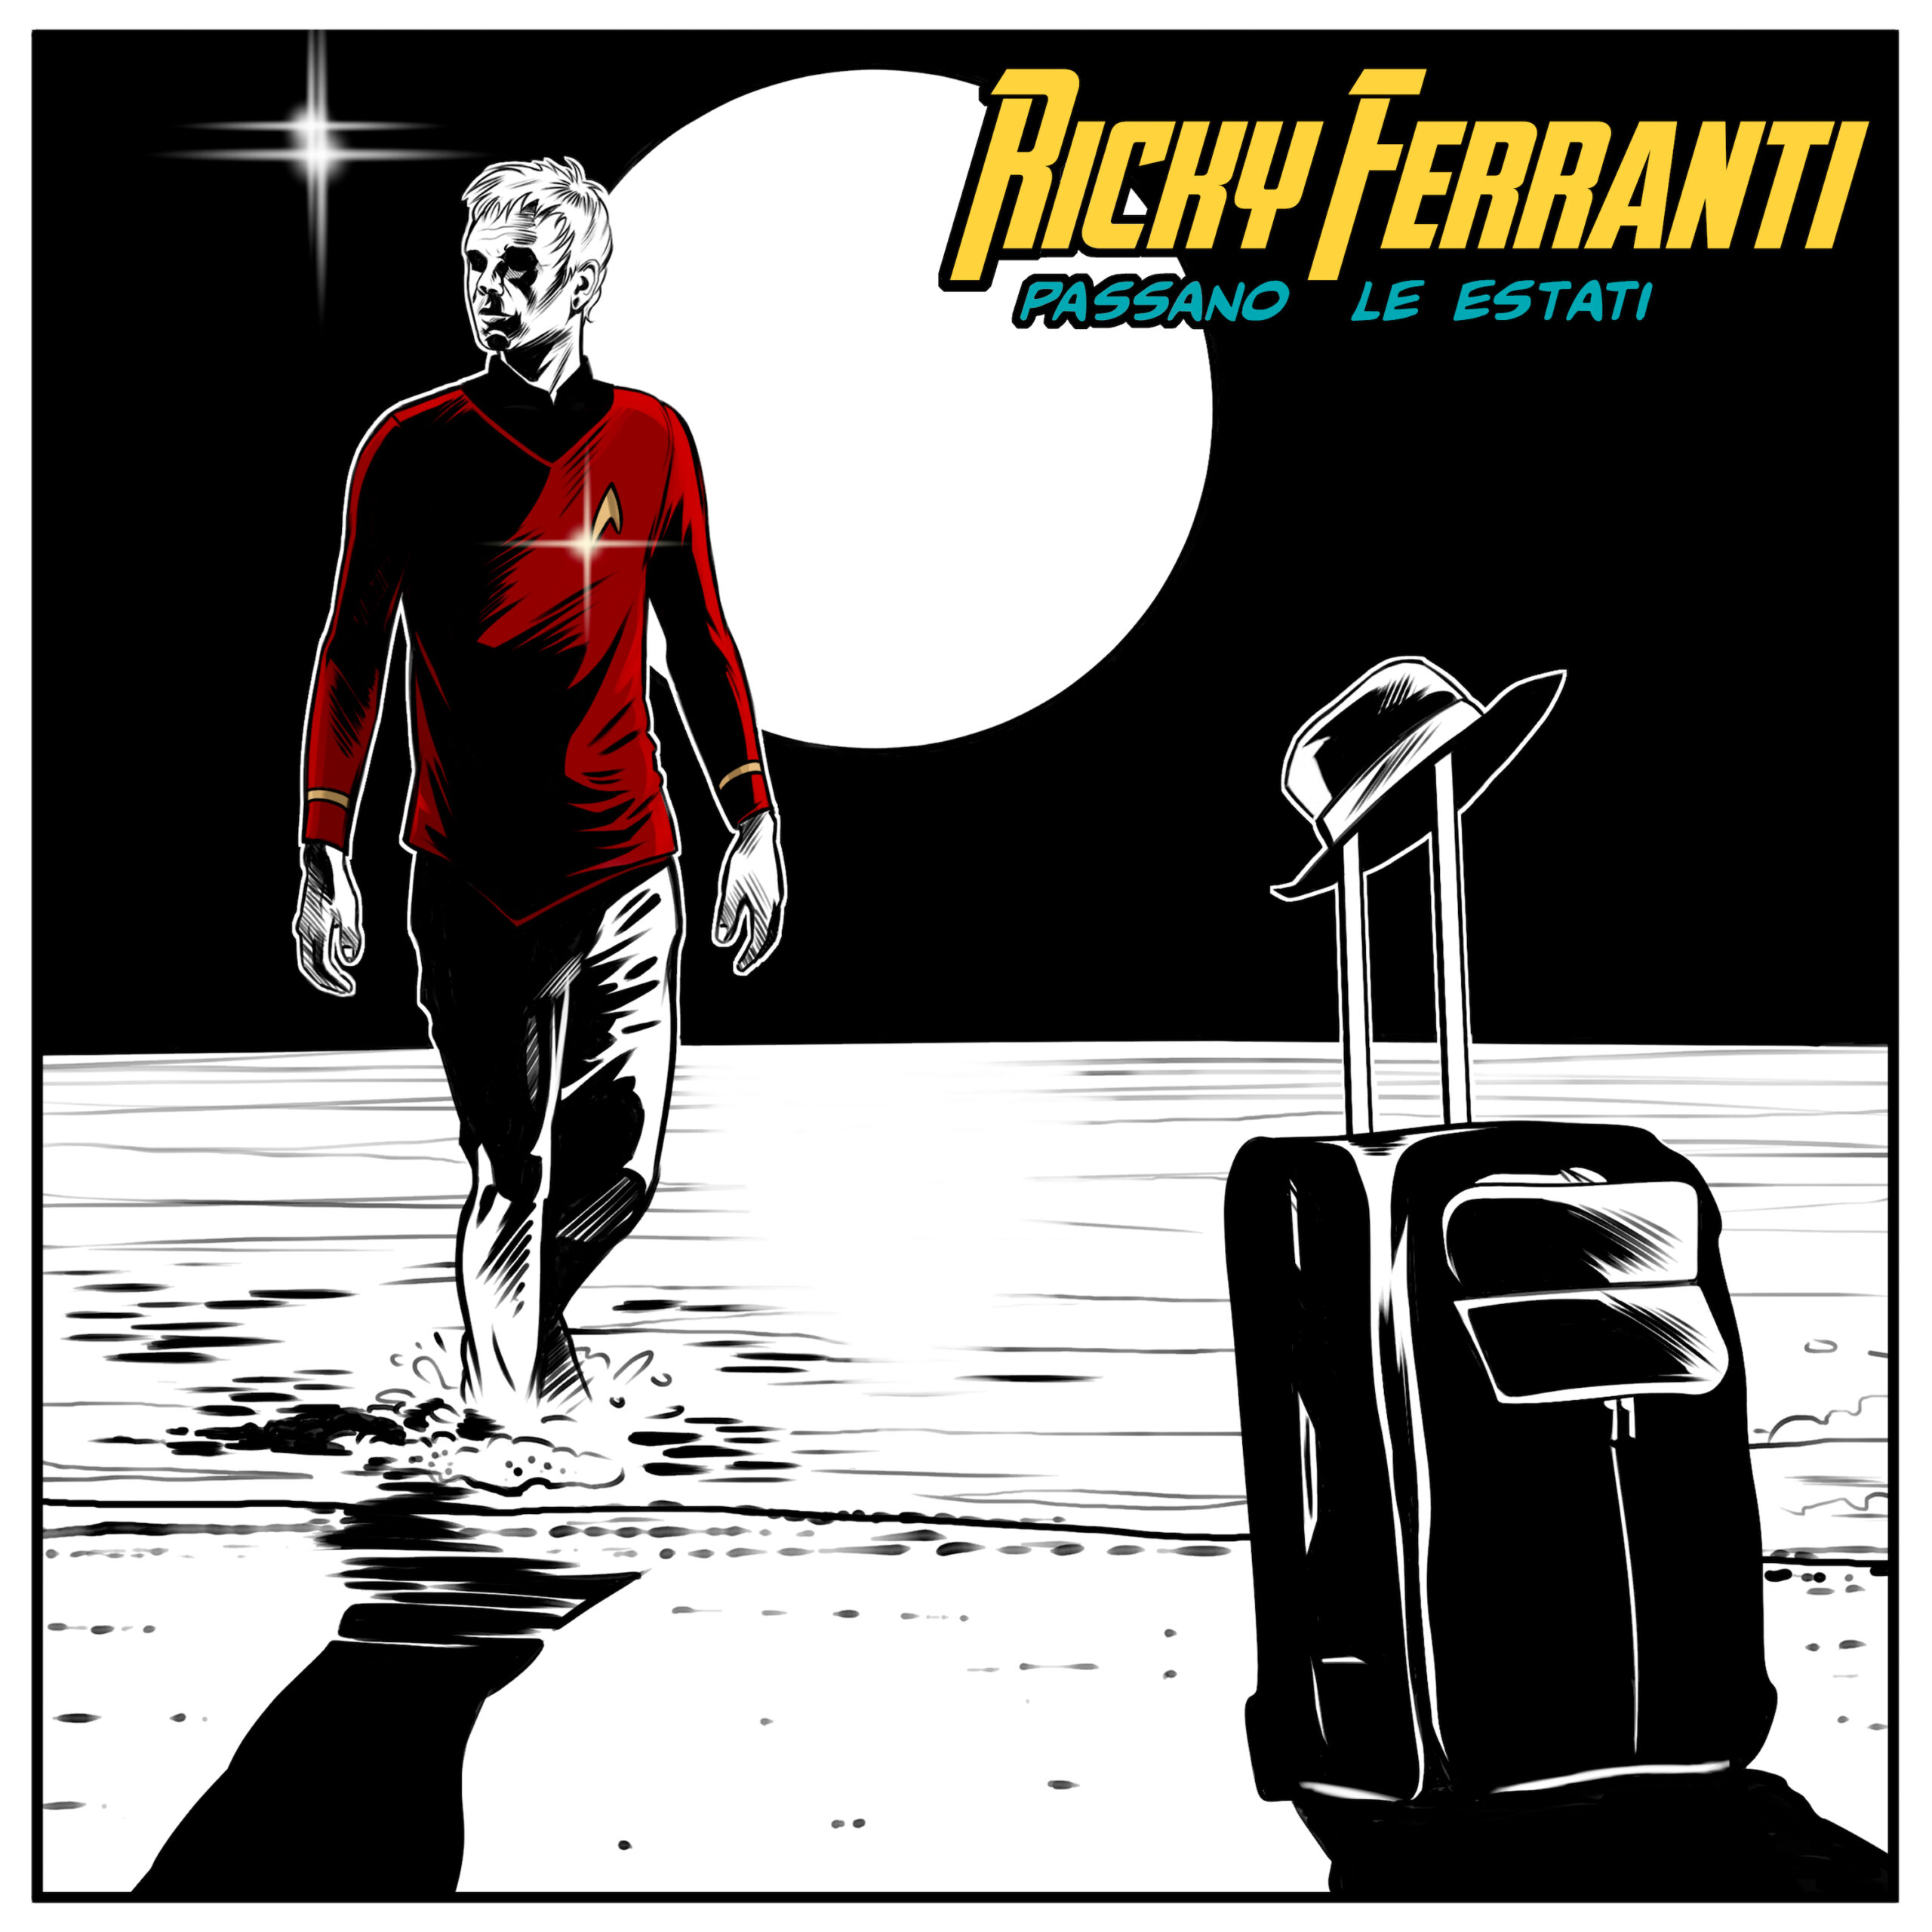 RICKY FERRANTI: esce oggi nei digital store il nuovo singolo “PASSANO LE ESTATI”